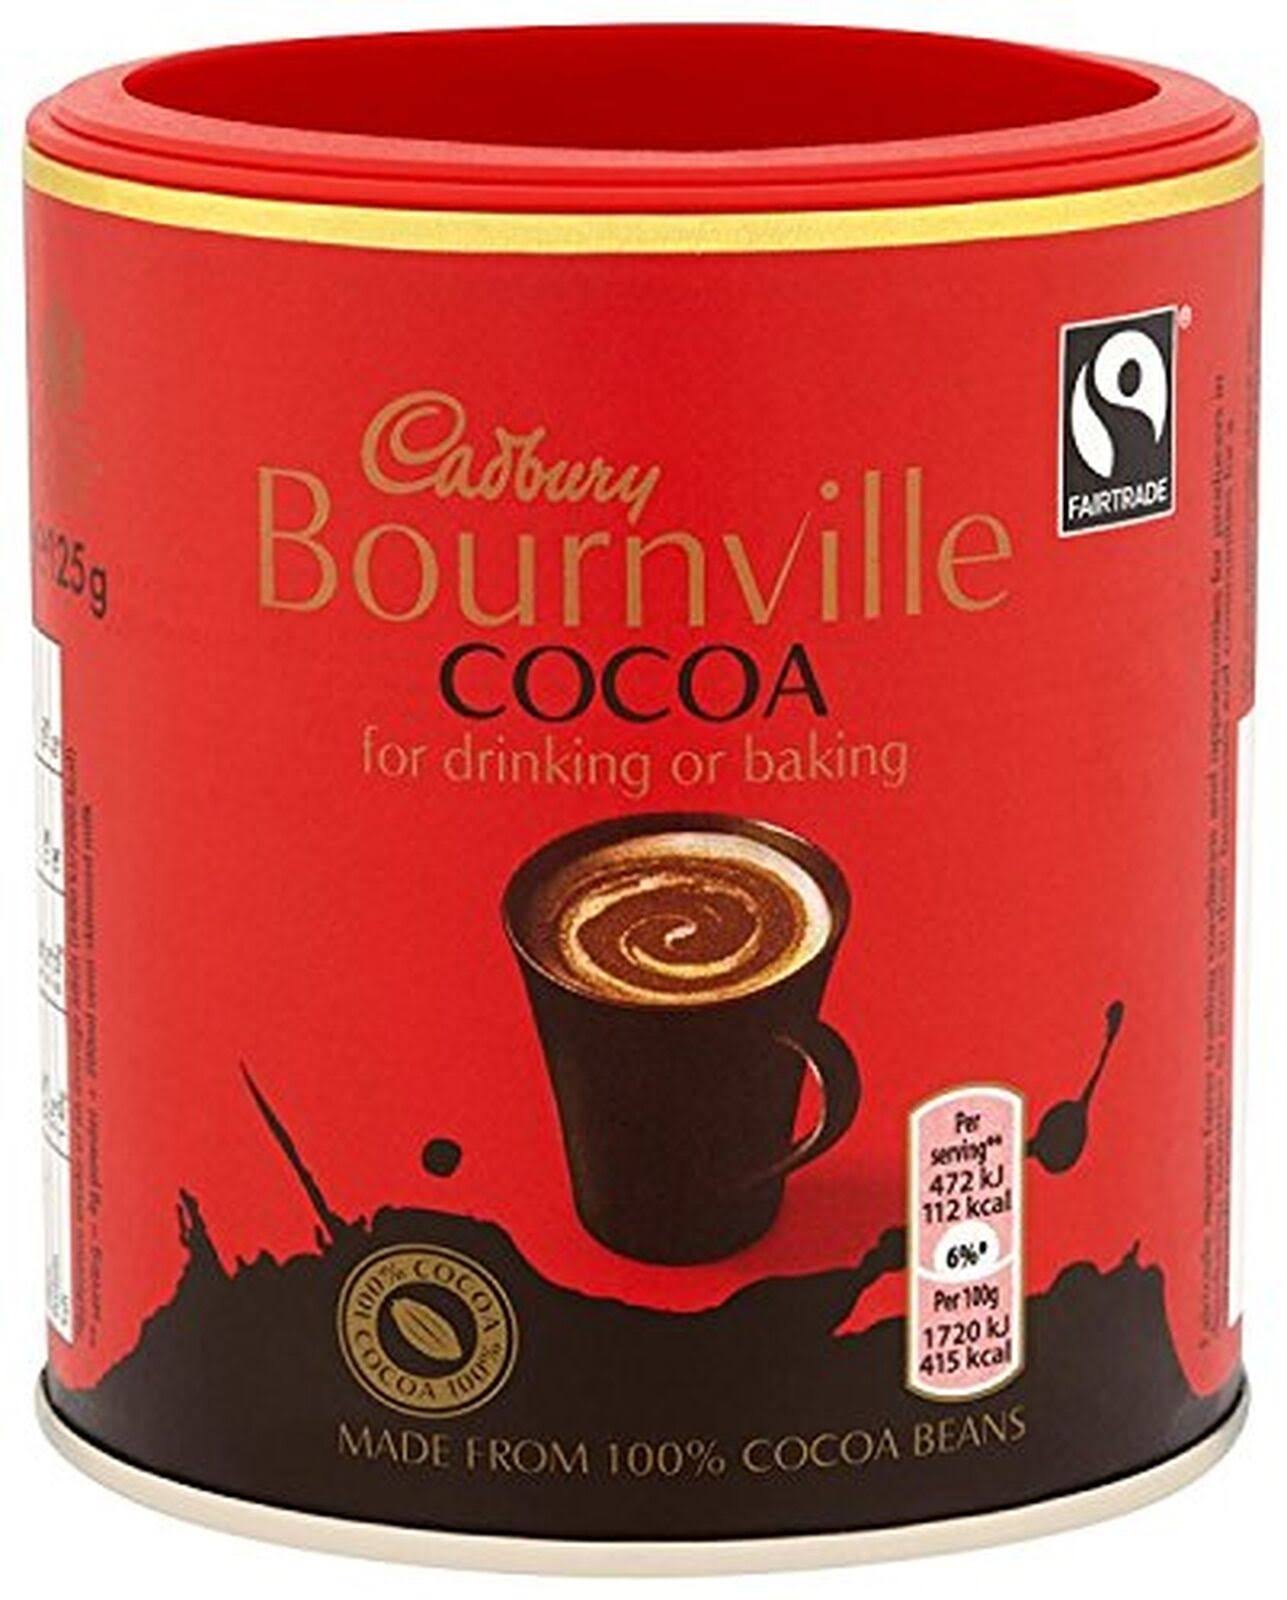 Cadbury Fairtrade Bournville Cocoa - 125g